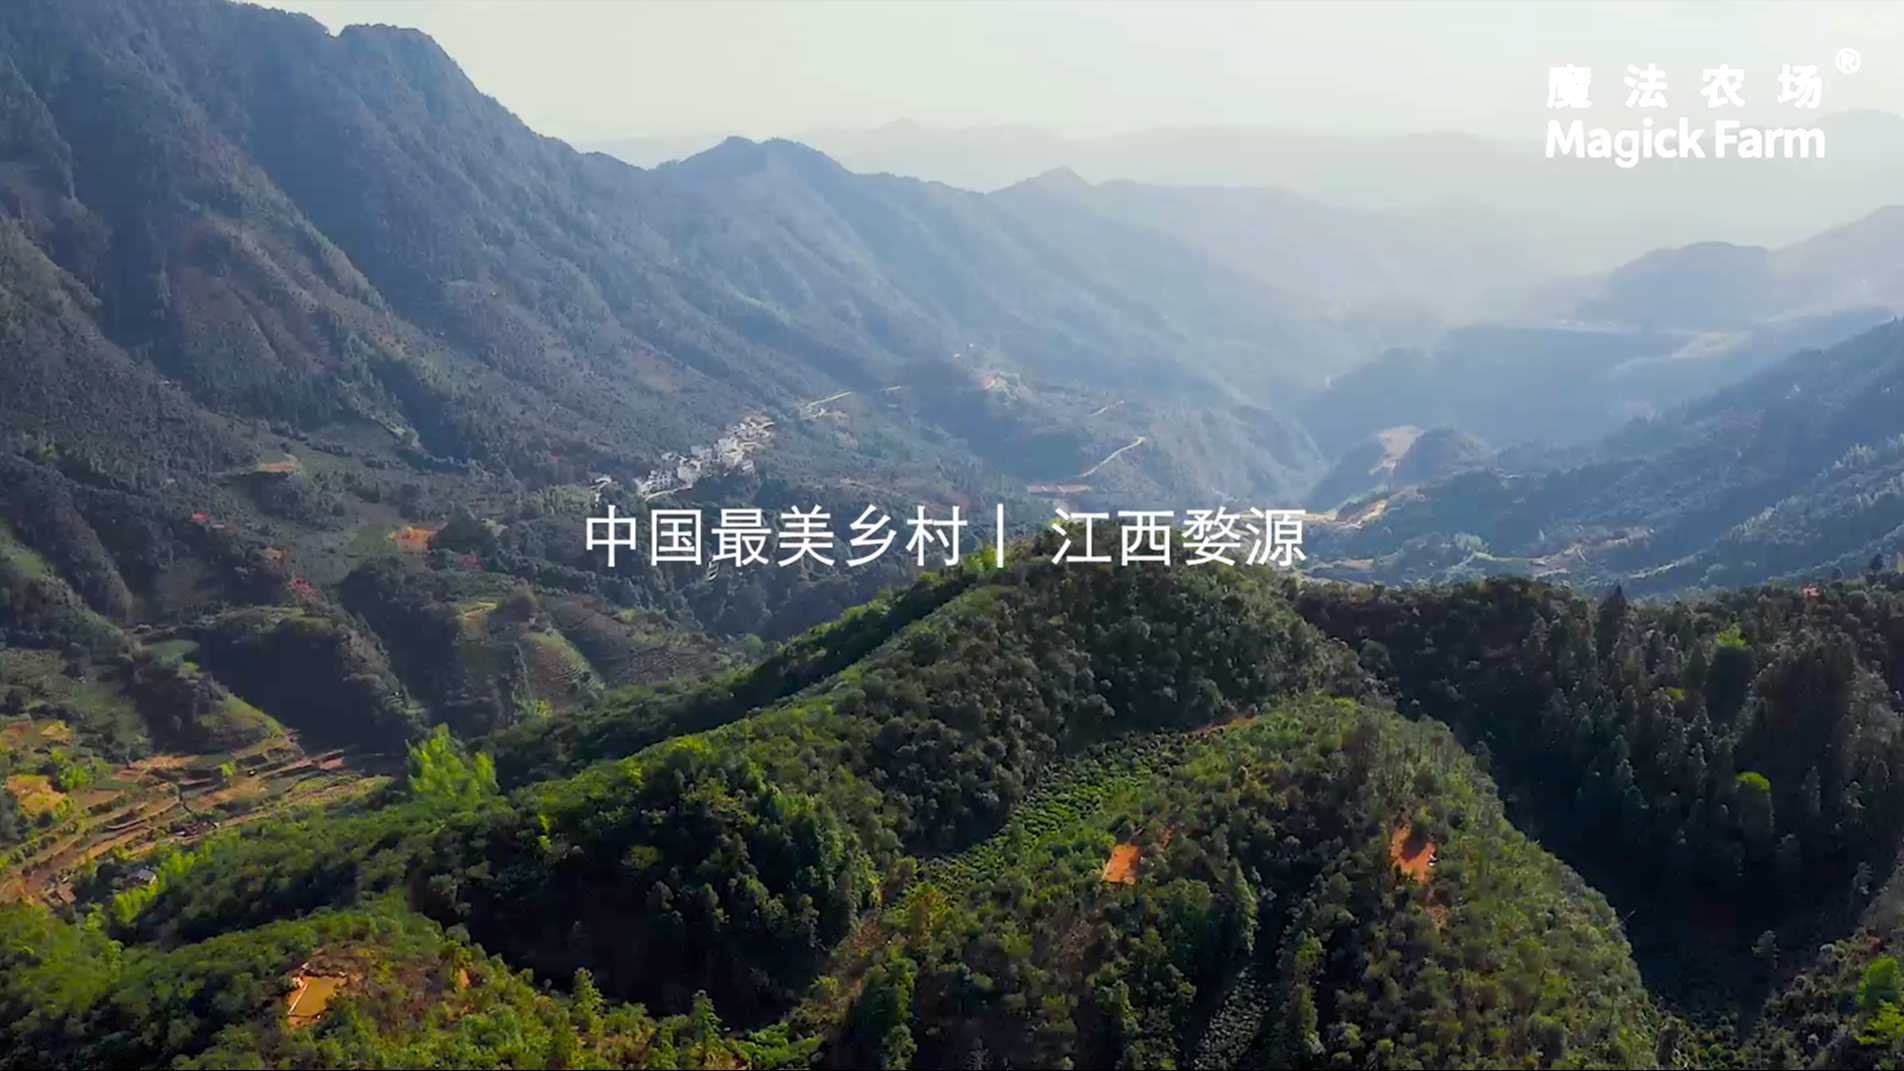 魔法农场山茶油宣传片 | 中国最美乡村